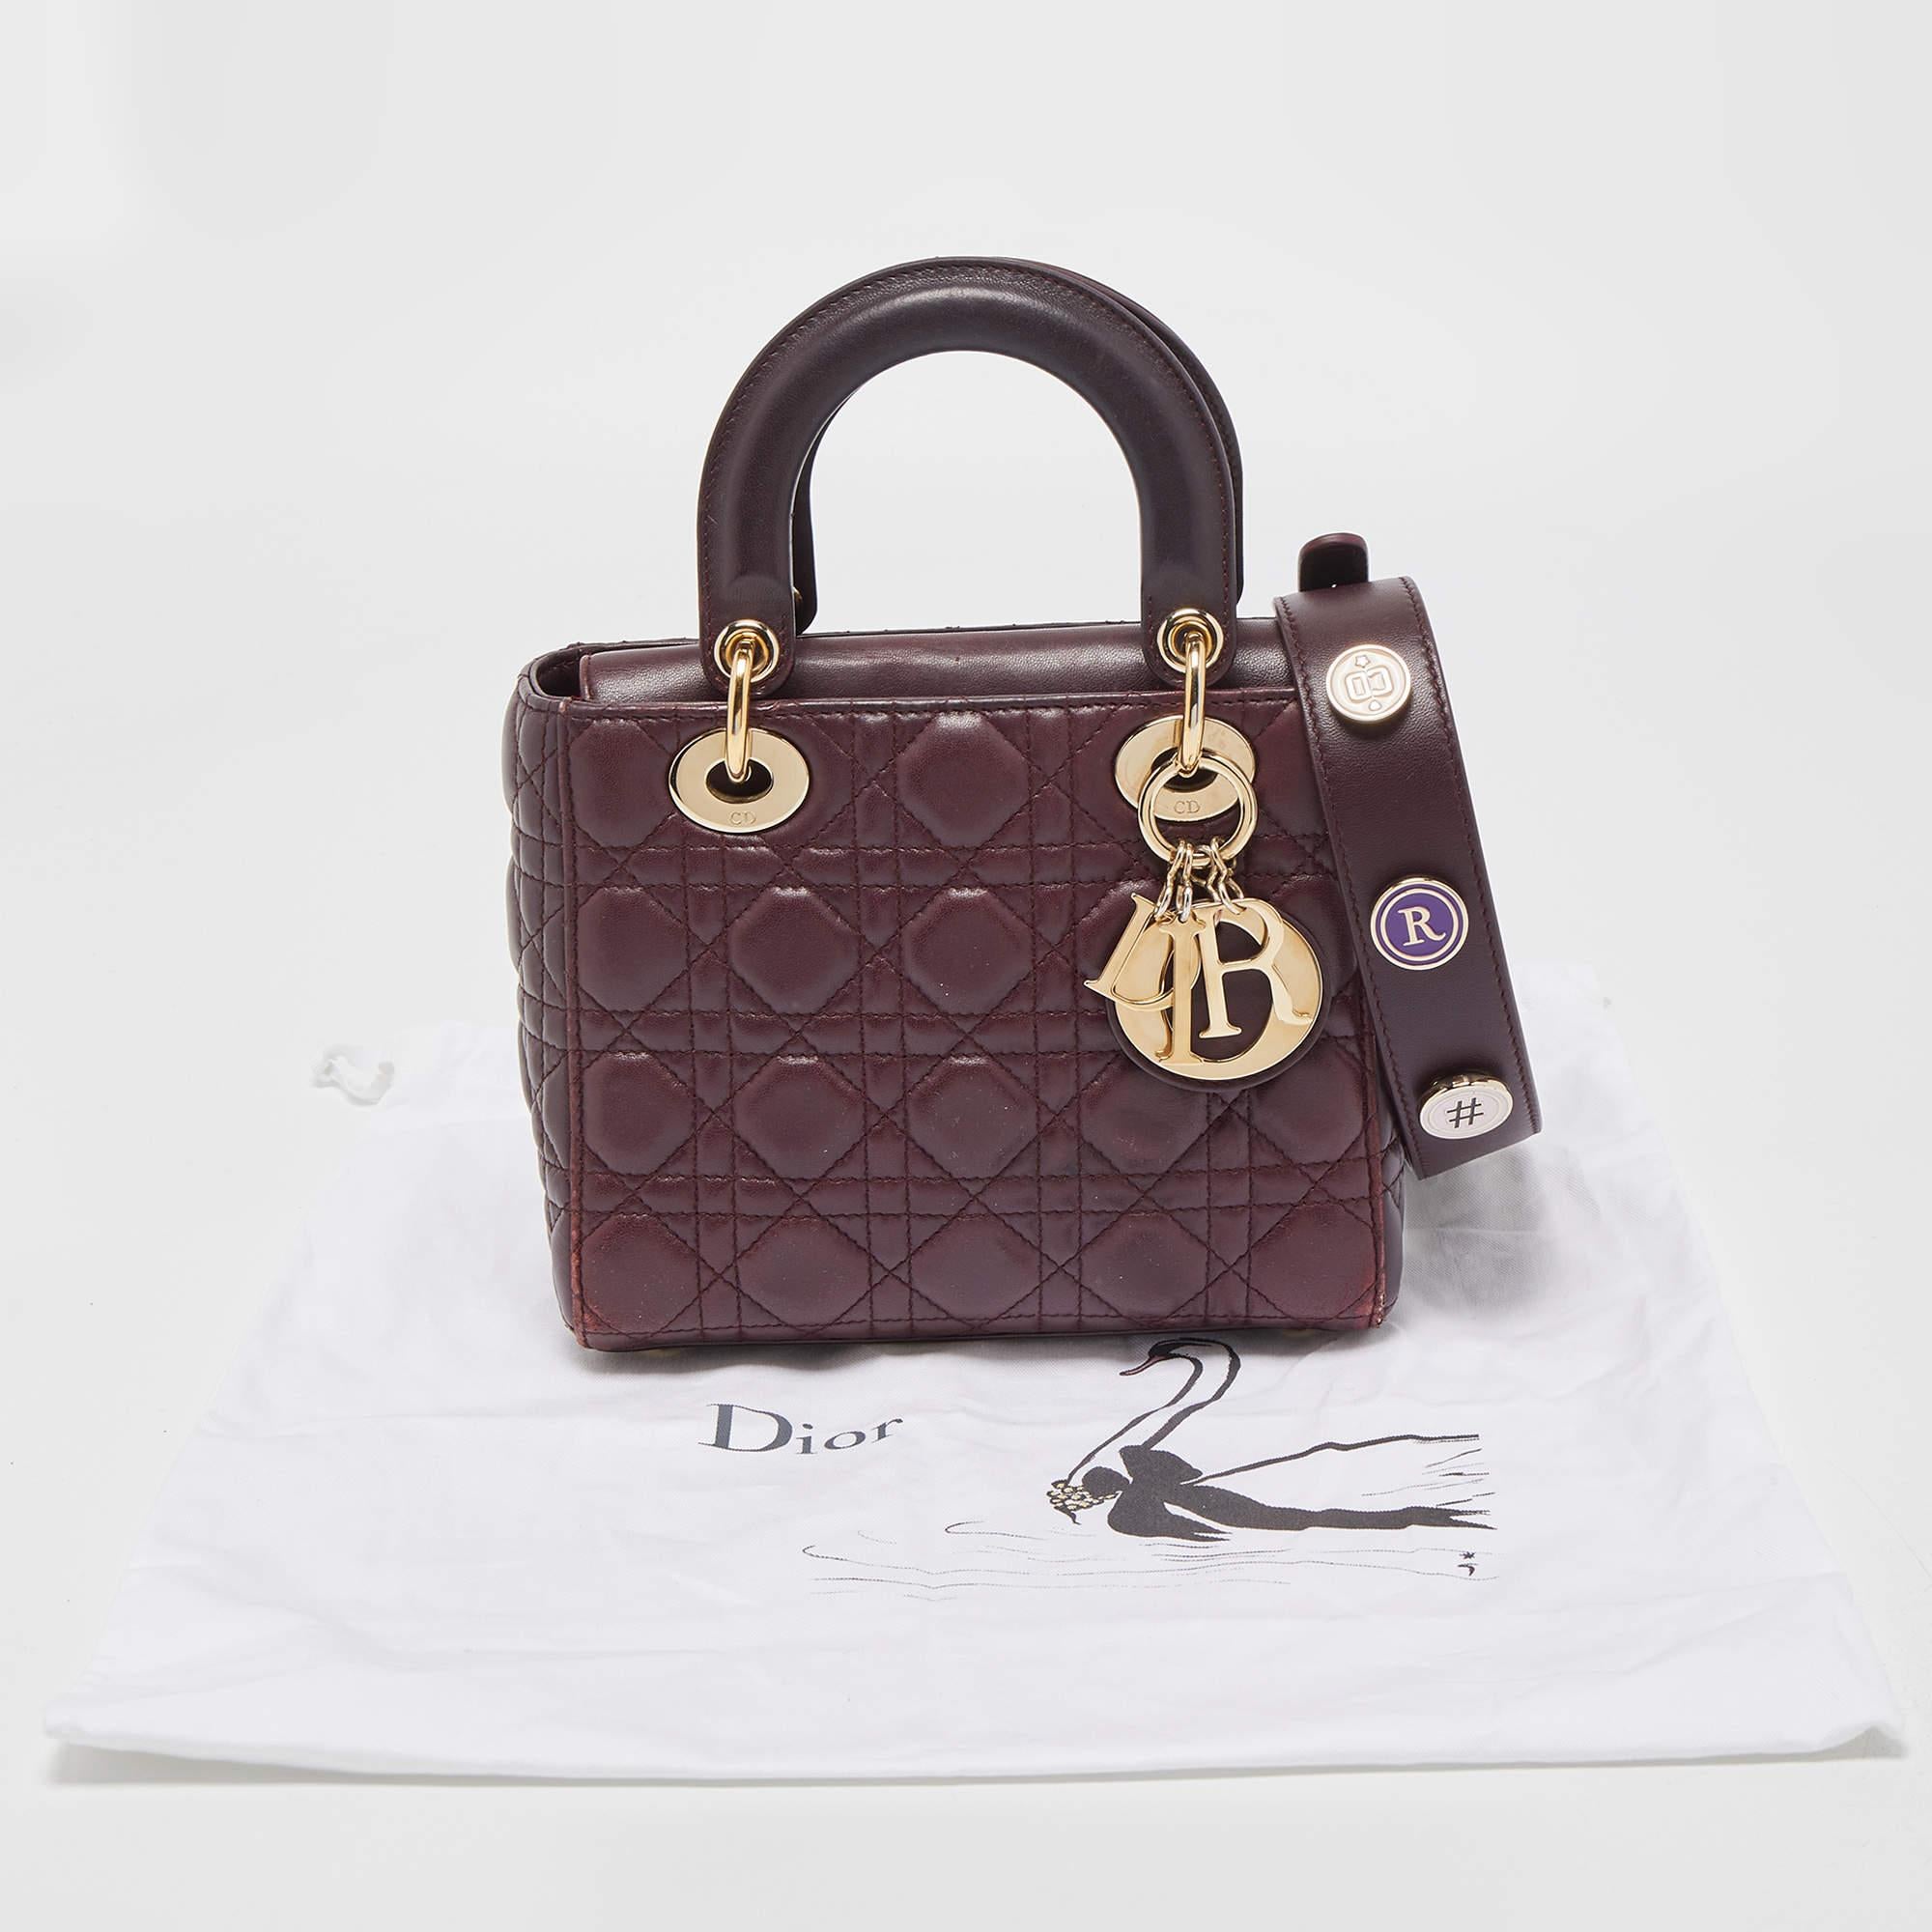 Dior Burgundy Cannage Leather Small Lady Dior My ABCDior Bag 2